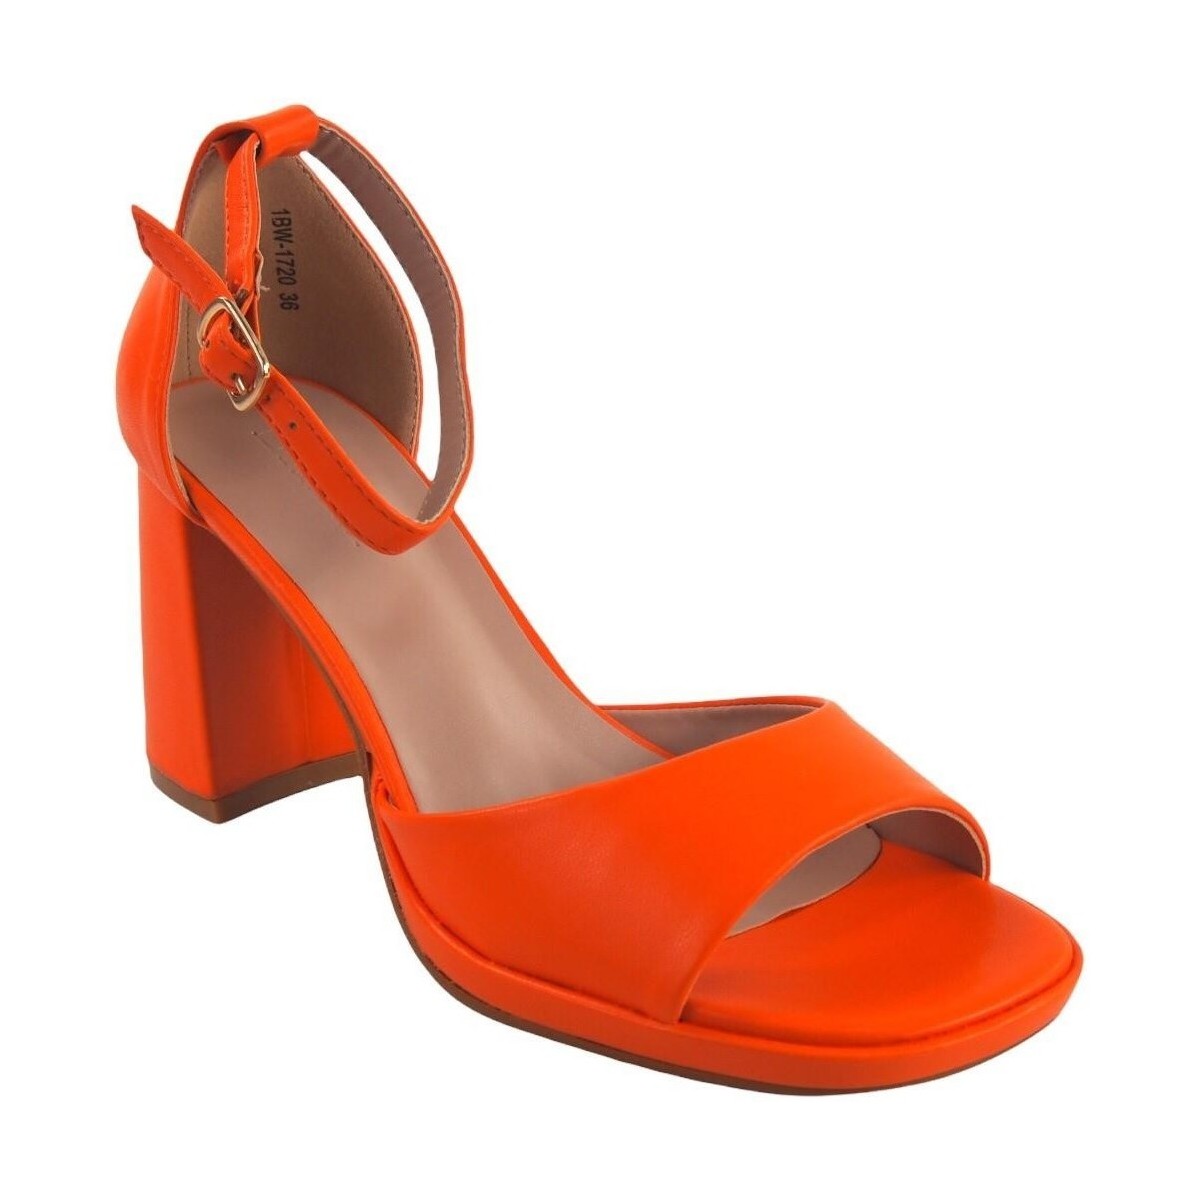 Chaussures Femme Multisport Bienve Chaussure  1bw-1720 orange Orange